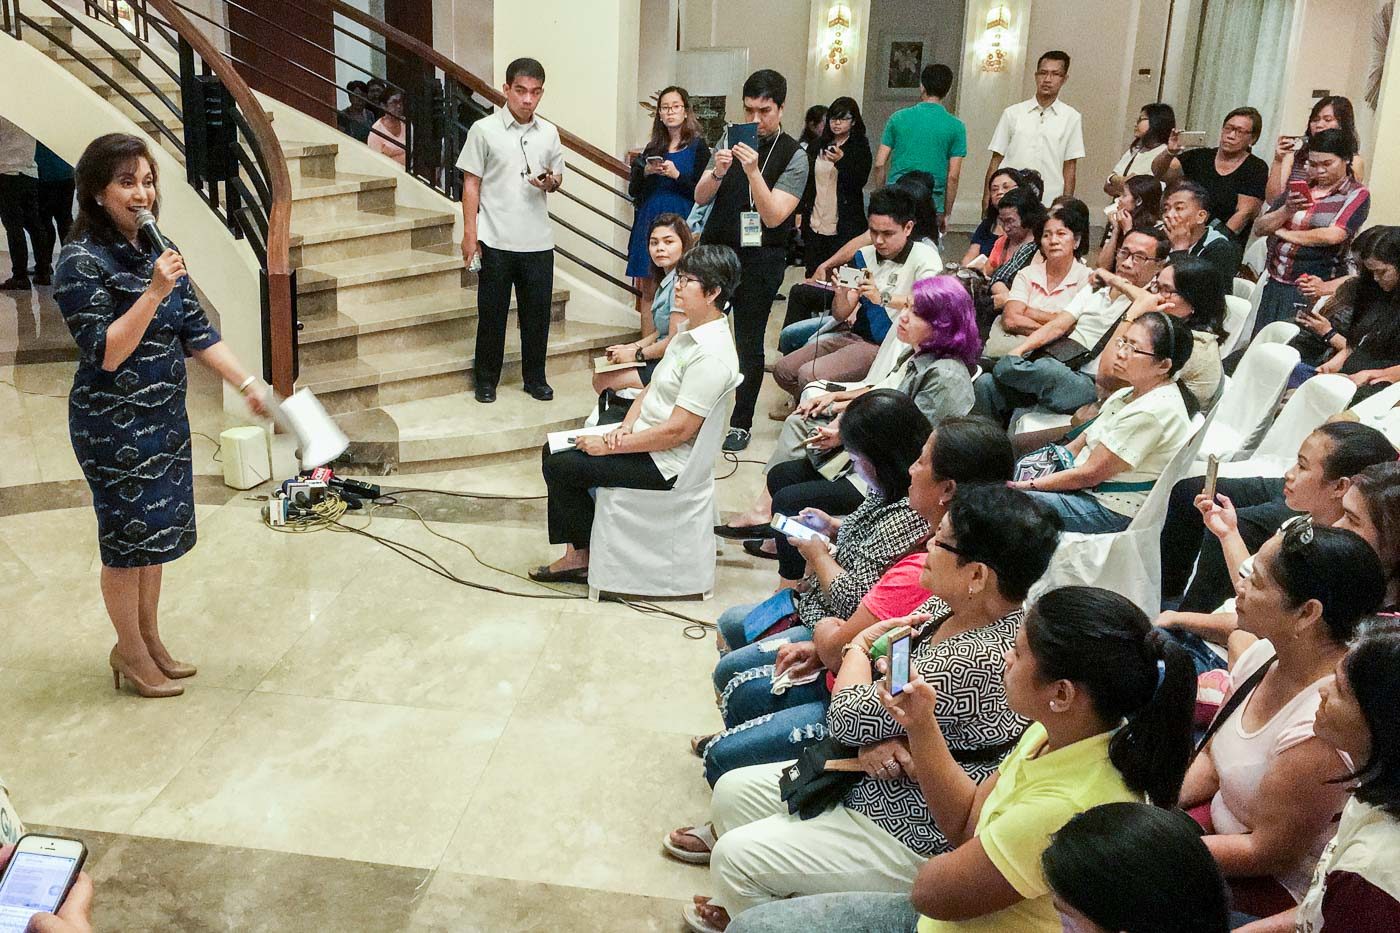 Mengkritik bukan berarti mencalonkan diri sebagai presiden, kata Robredo